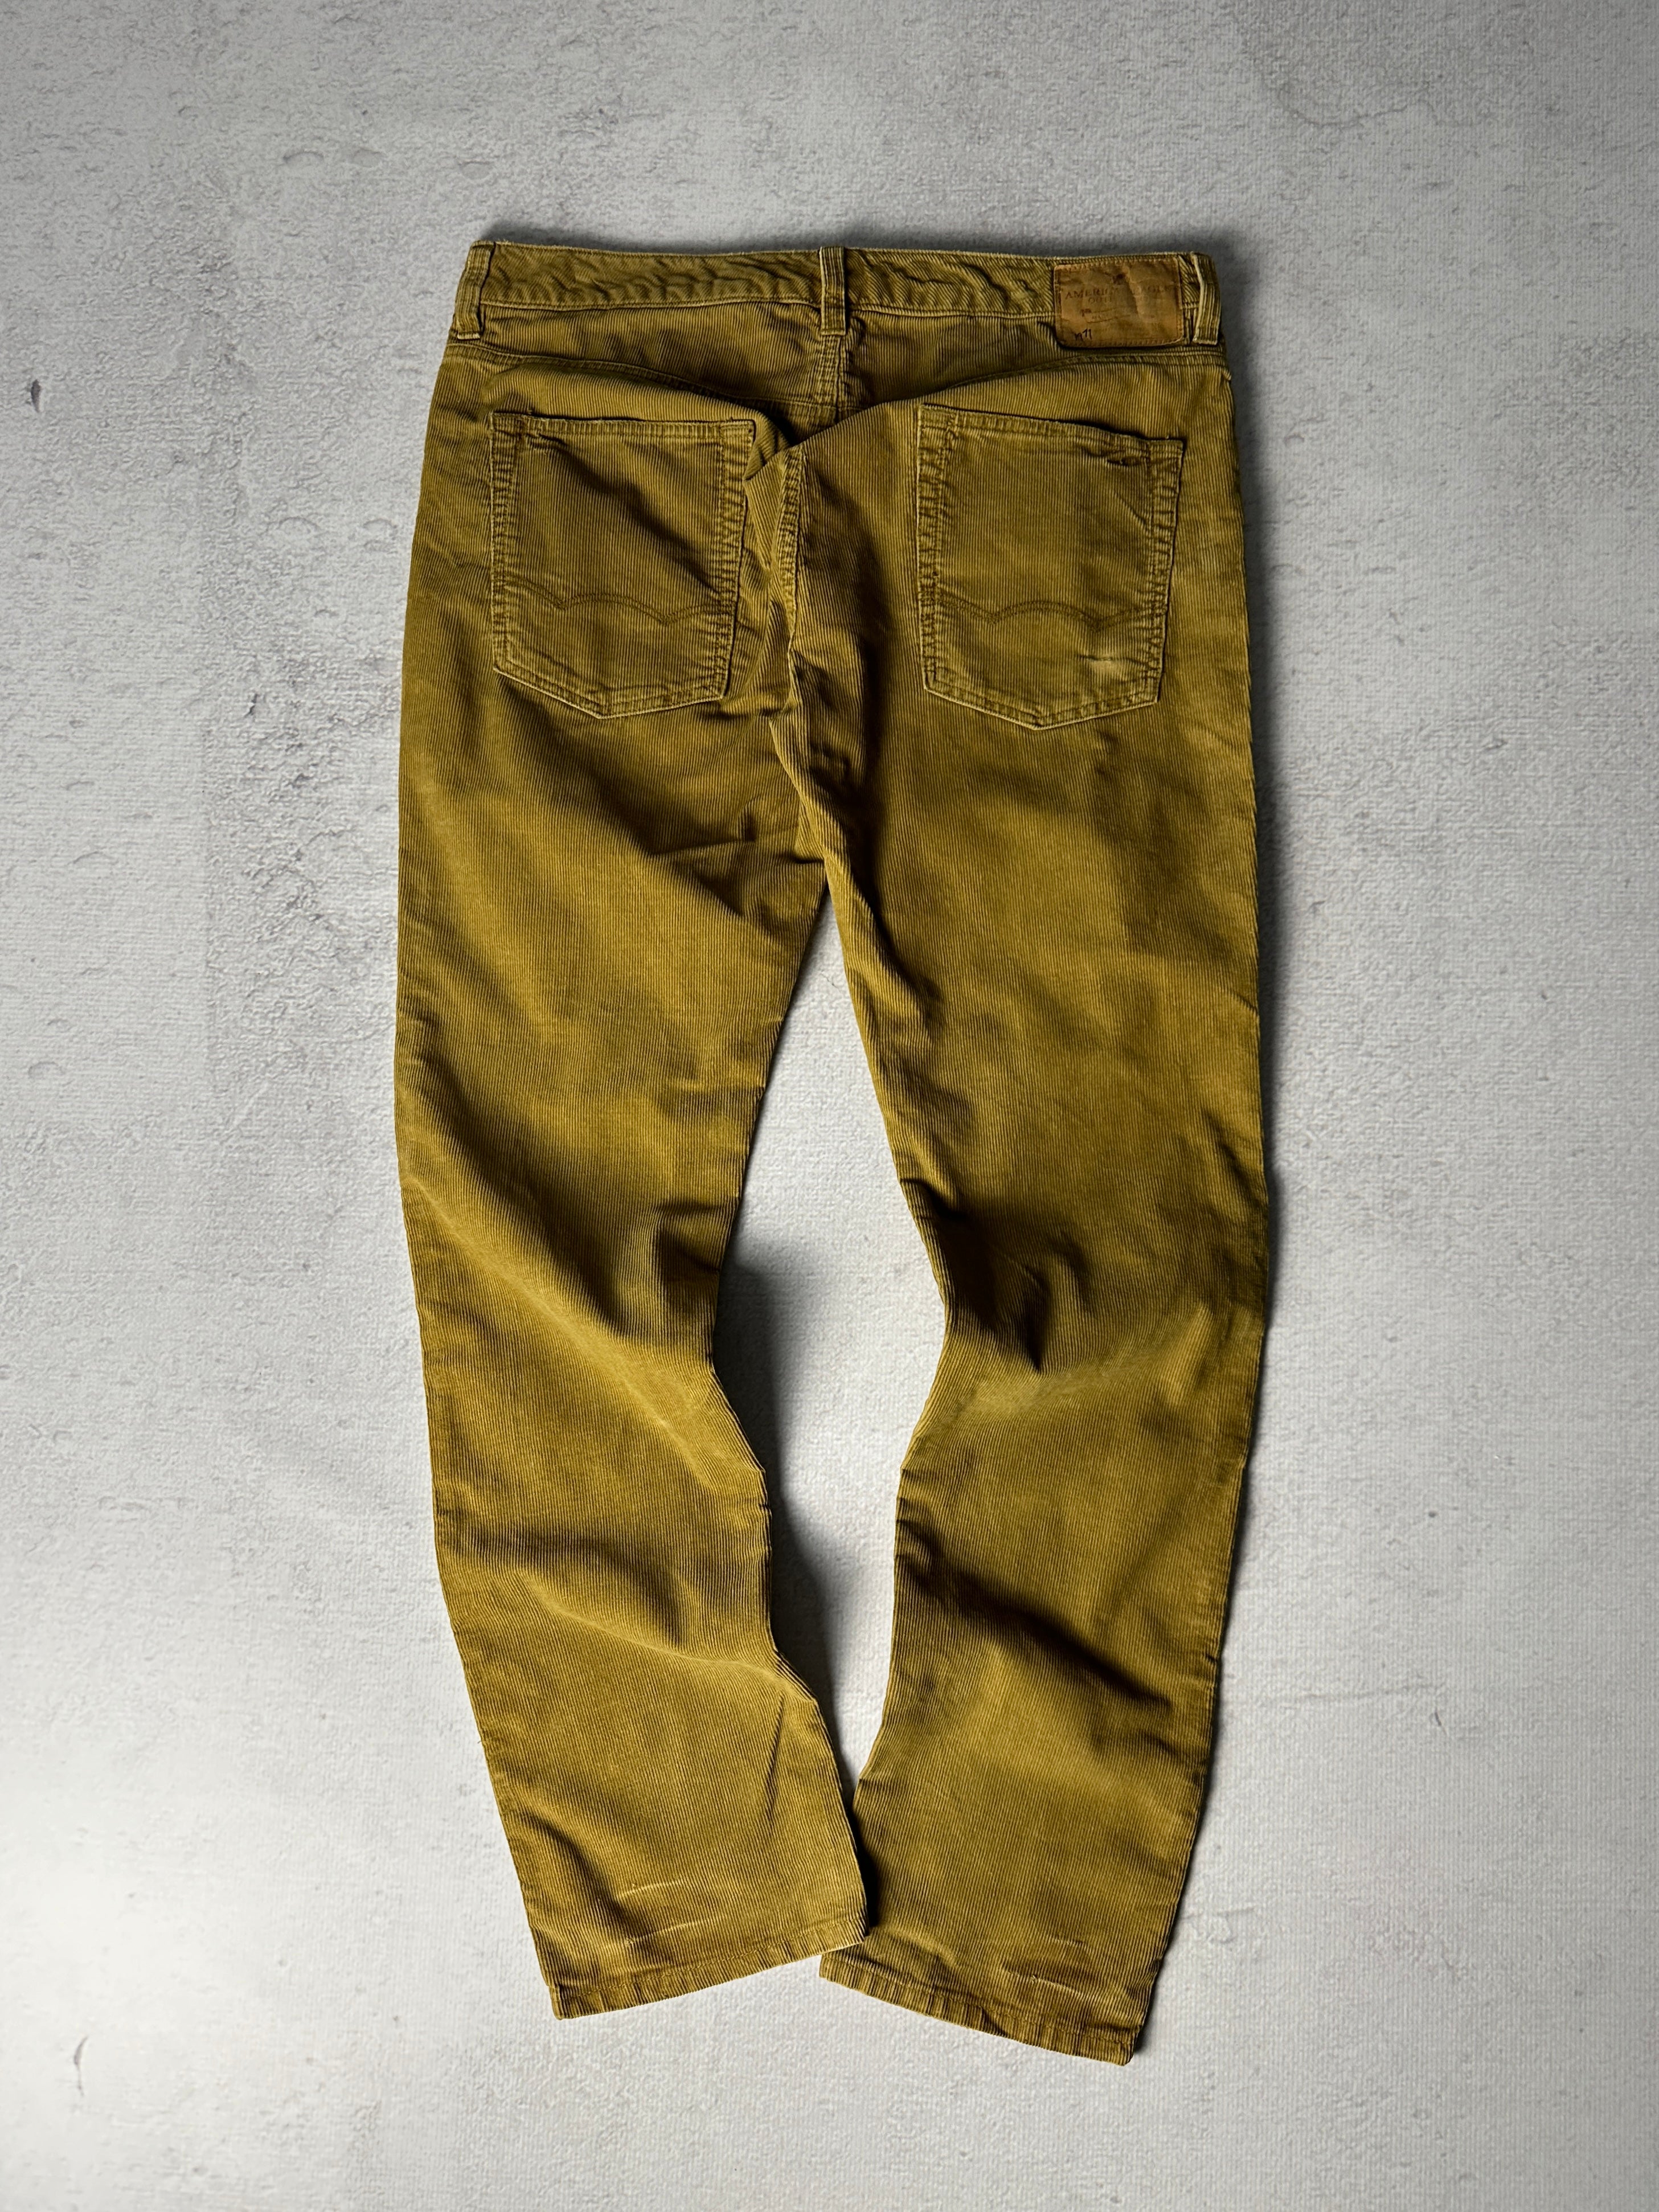 Vintage American Eagle Couduroy Jeans - Men's 38W32L